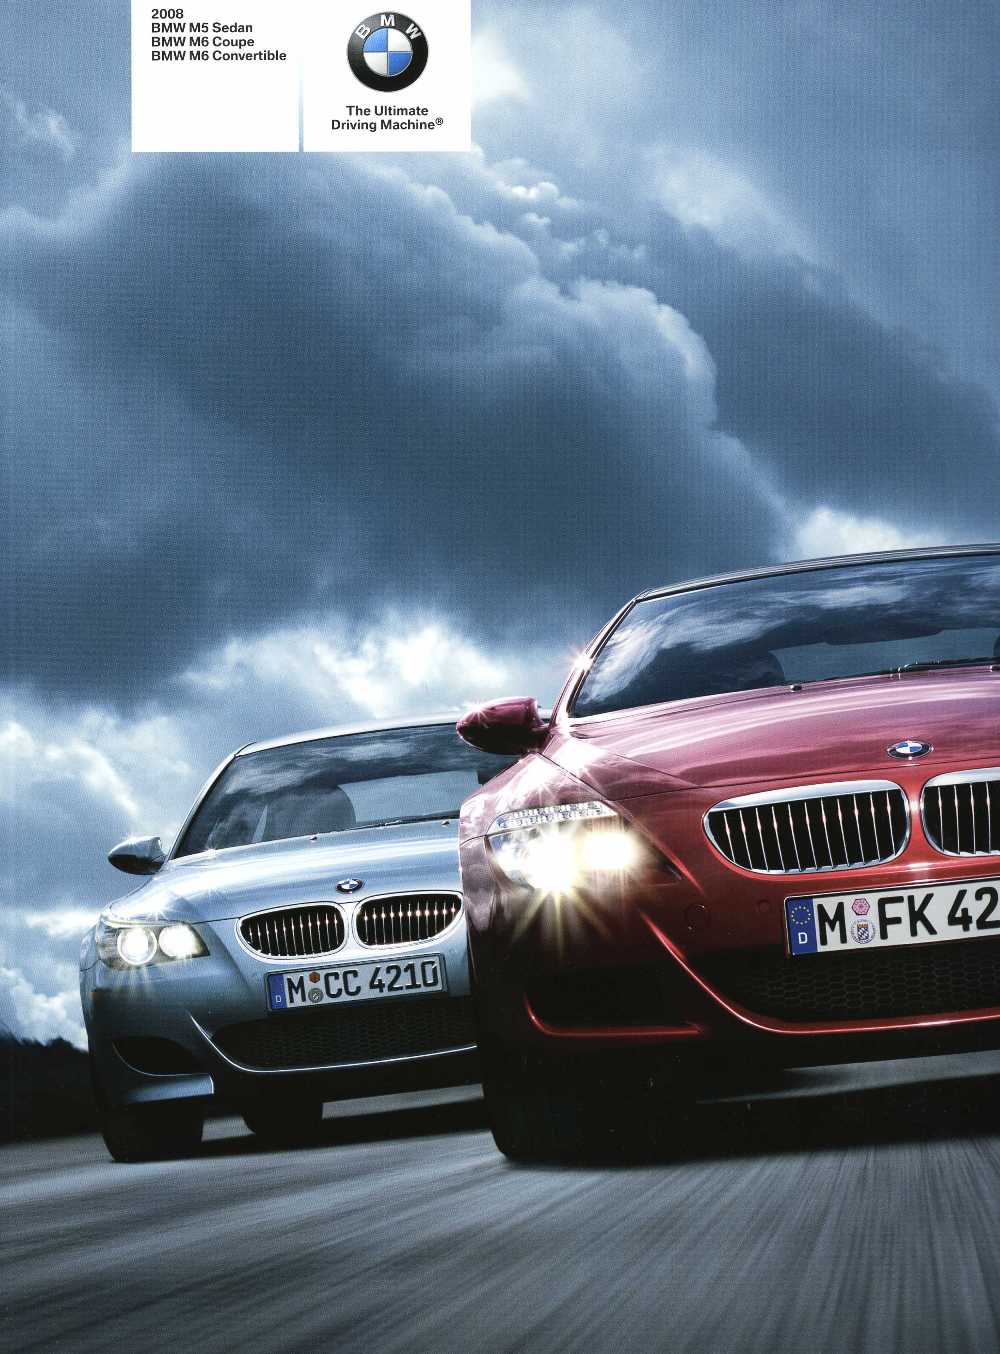 Brochure - 2008 BMW M5 Sedan BMW M6 Coupe BMW M6 Convertible - E60 M5 & E63 / E64 M6 (1st version)